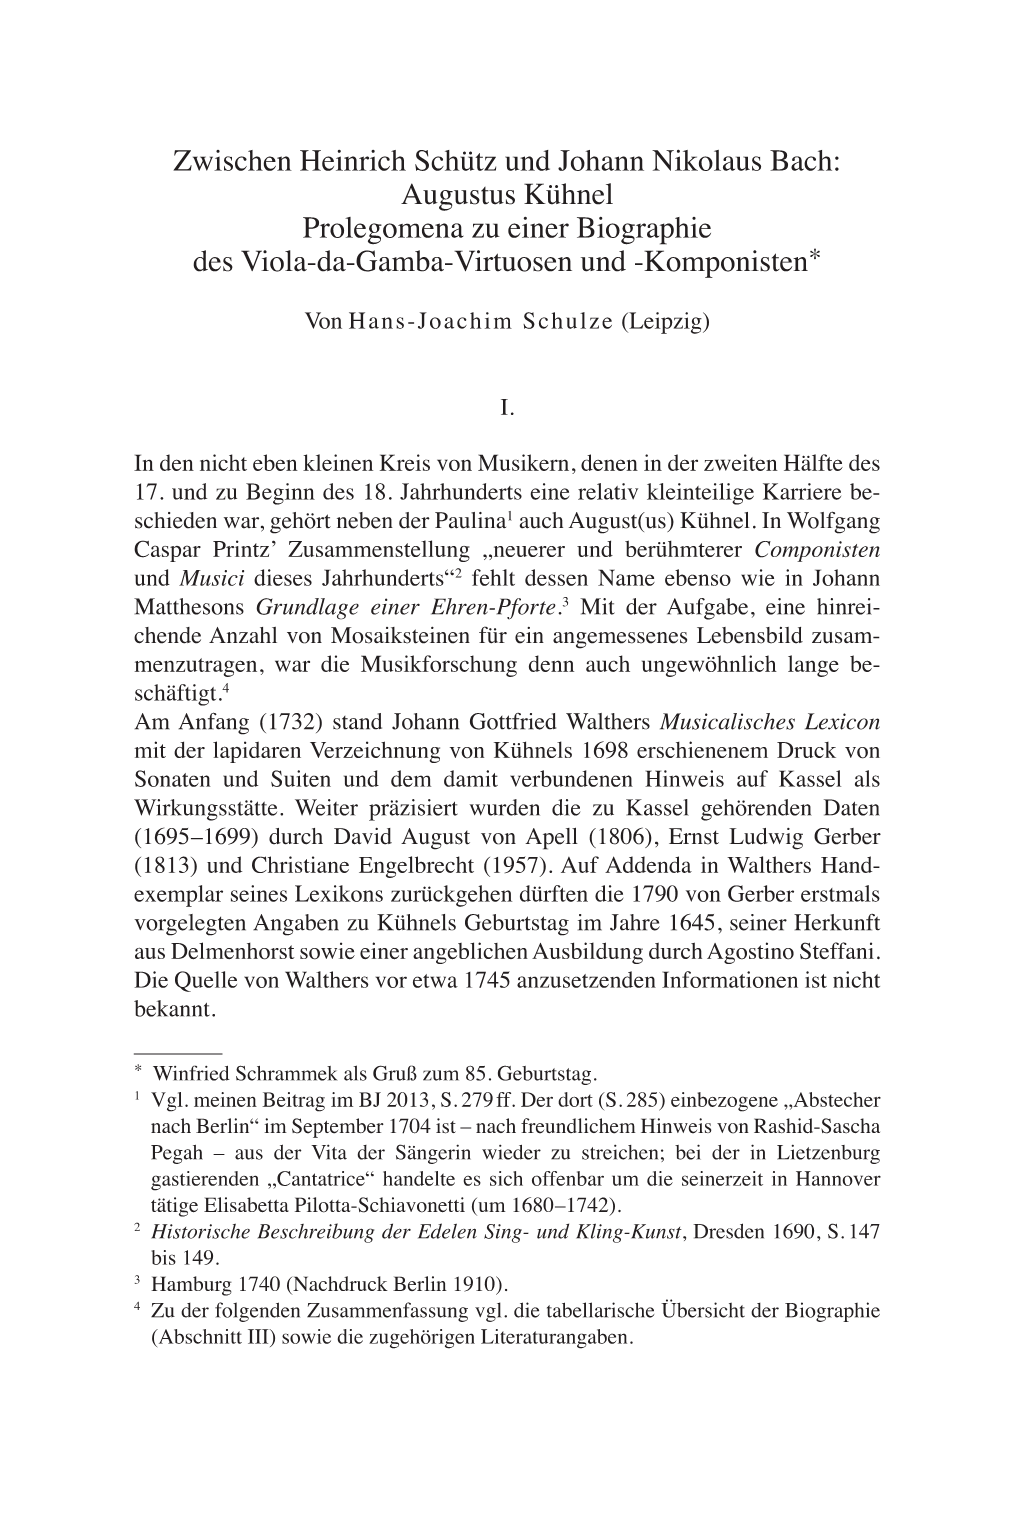 Zwischen Heinrich Schütz Und Johann Nikolaus Bach: Augustus Kühnel Prolegomena Zu Einer Biographie Des Viola-Da-Gamba-Virtuosen Und -Komponisten*